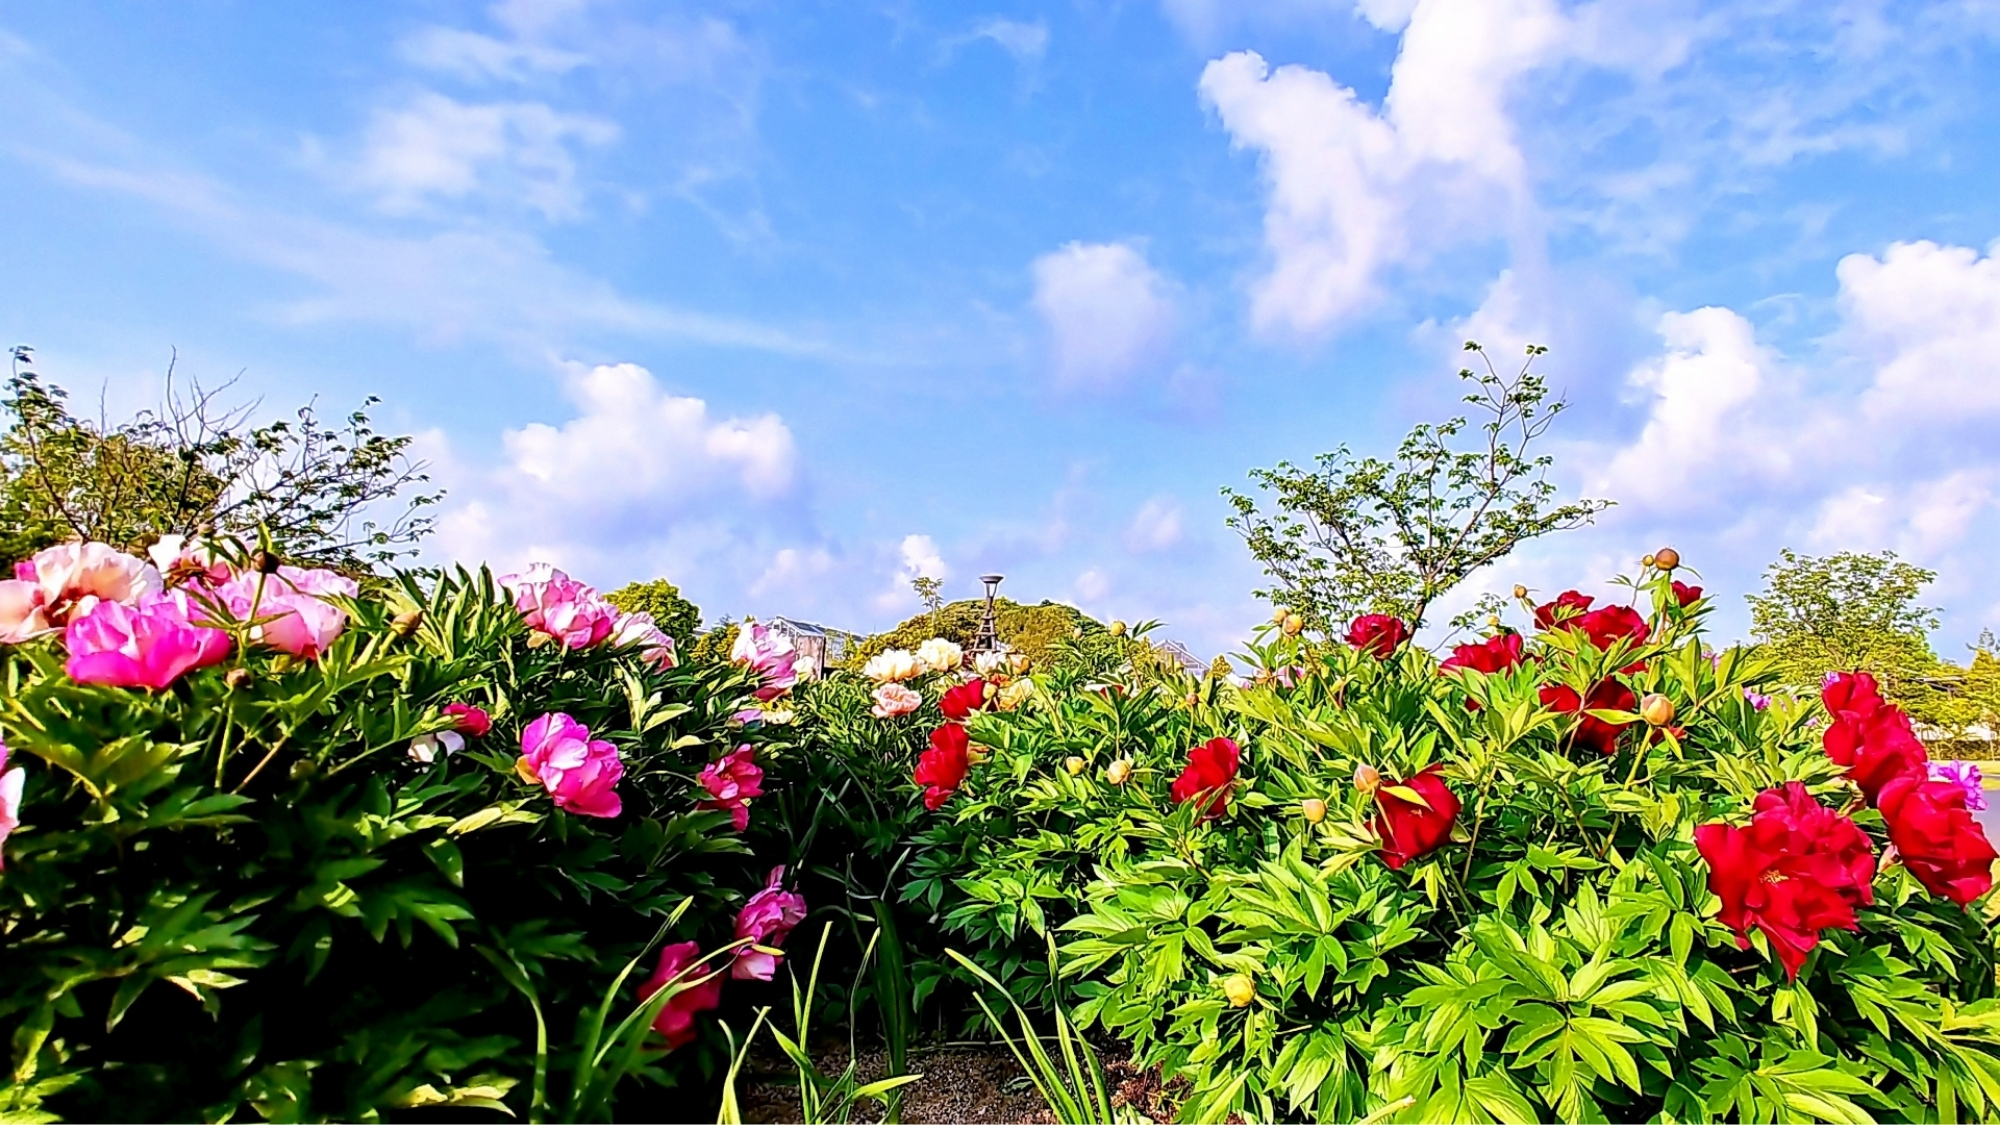 季節ごとに様々な花が楽しめる「しまね花の郷」5月は芍薬が見頃。